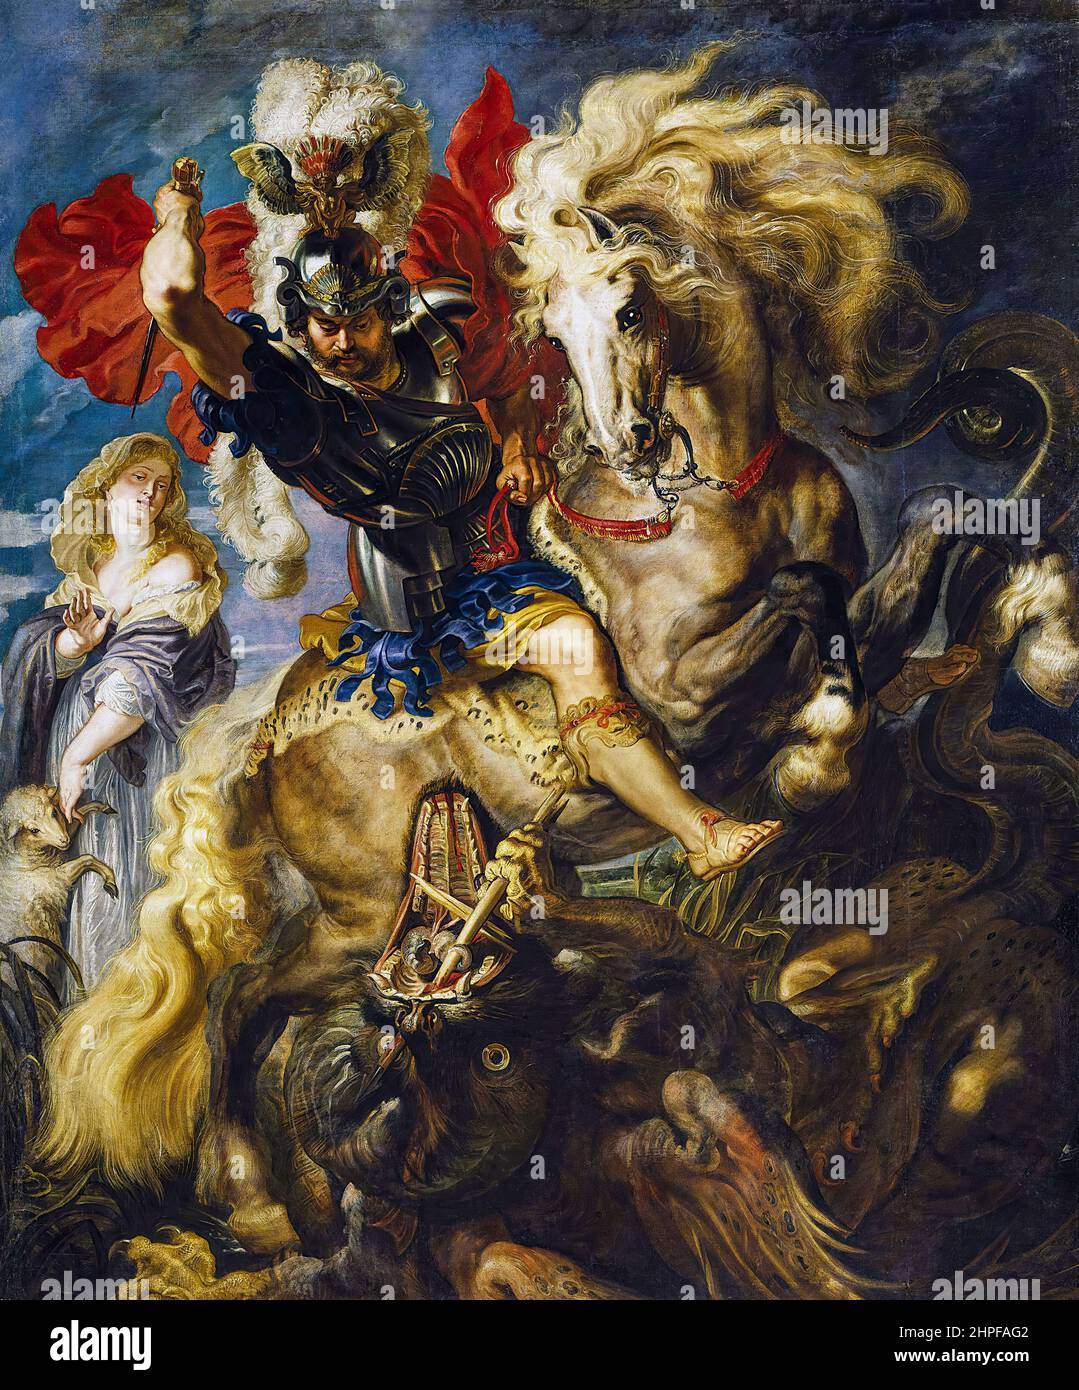 Saint George et le Dragon, peinture à l'huile sur toile par Peter Paul Rubens, 1606-1608 Banque D'Images